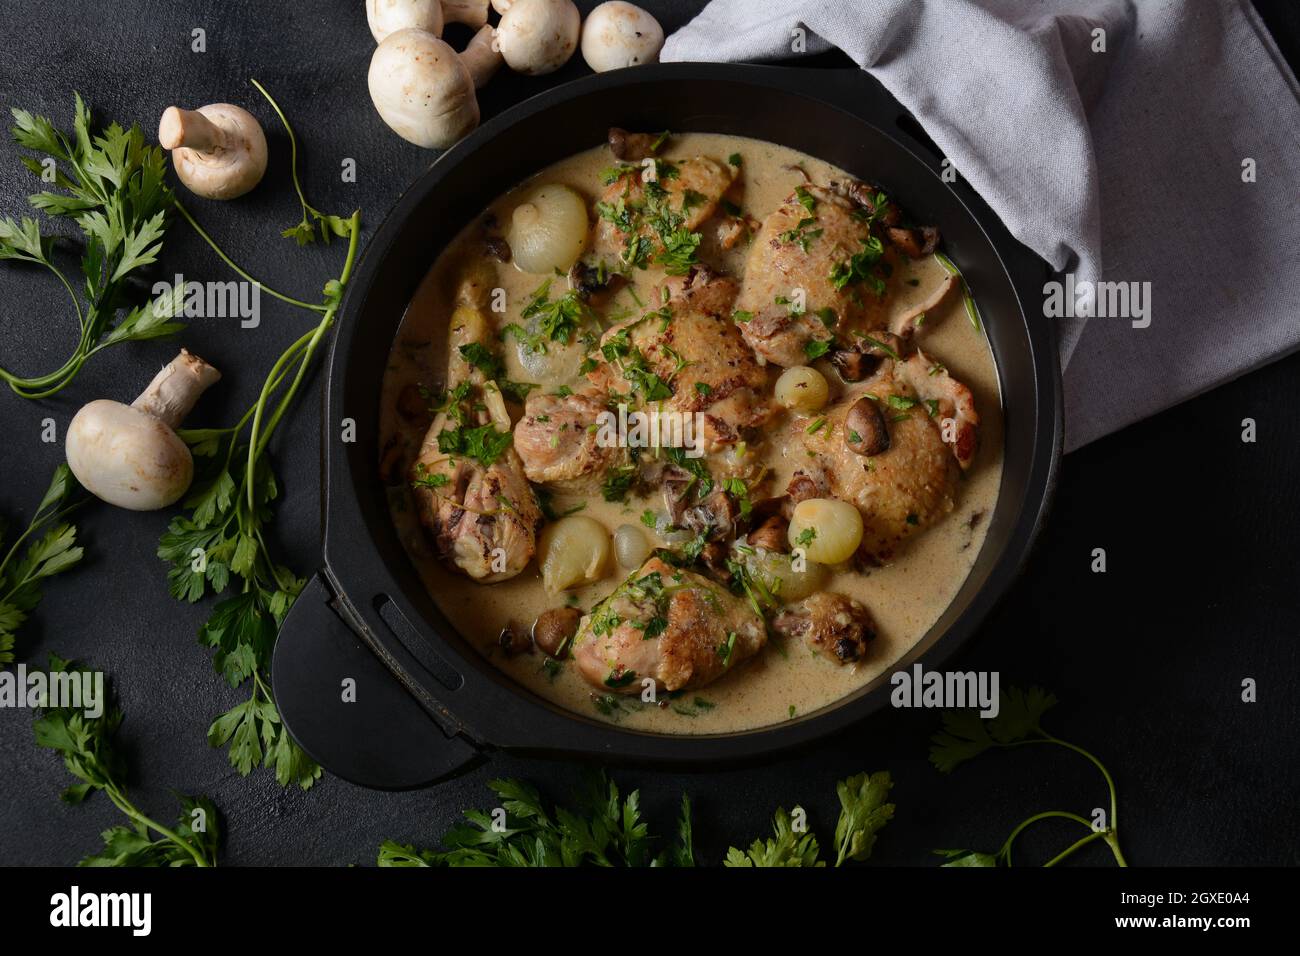 Fricassee - cuisine française. Poulet cuit dans une sauce crémeuse aux champignons dans un four hollandais noir sur une table noire Banque D'Images